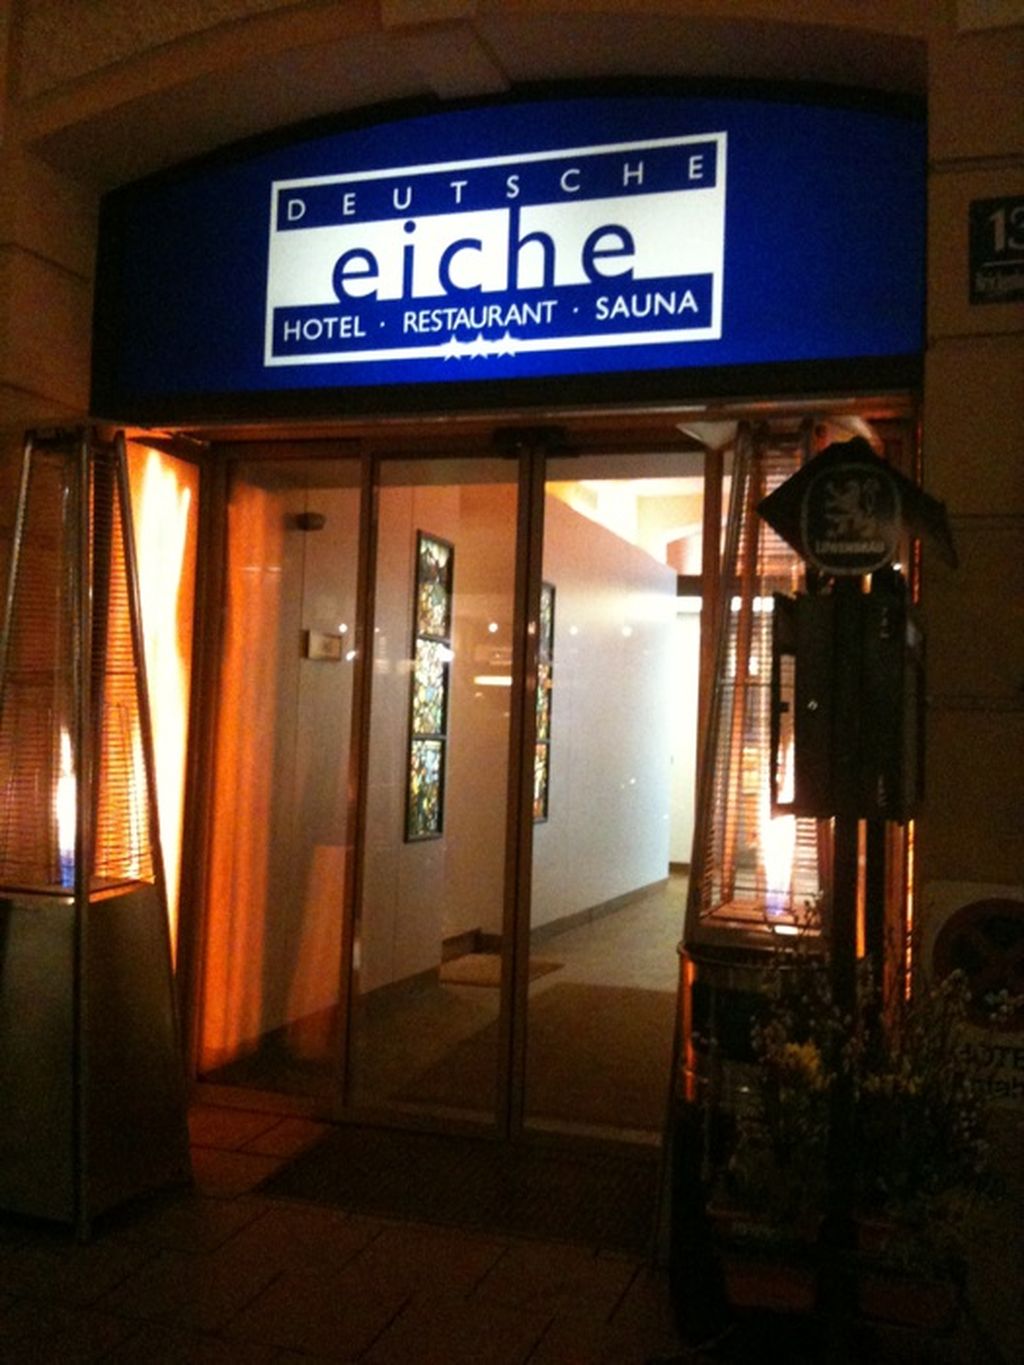 Nutzerfoto 2 Hotel Deutsche Eiche